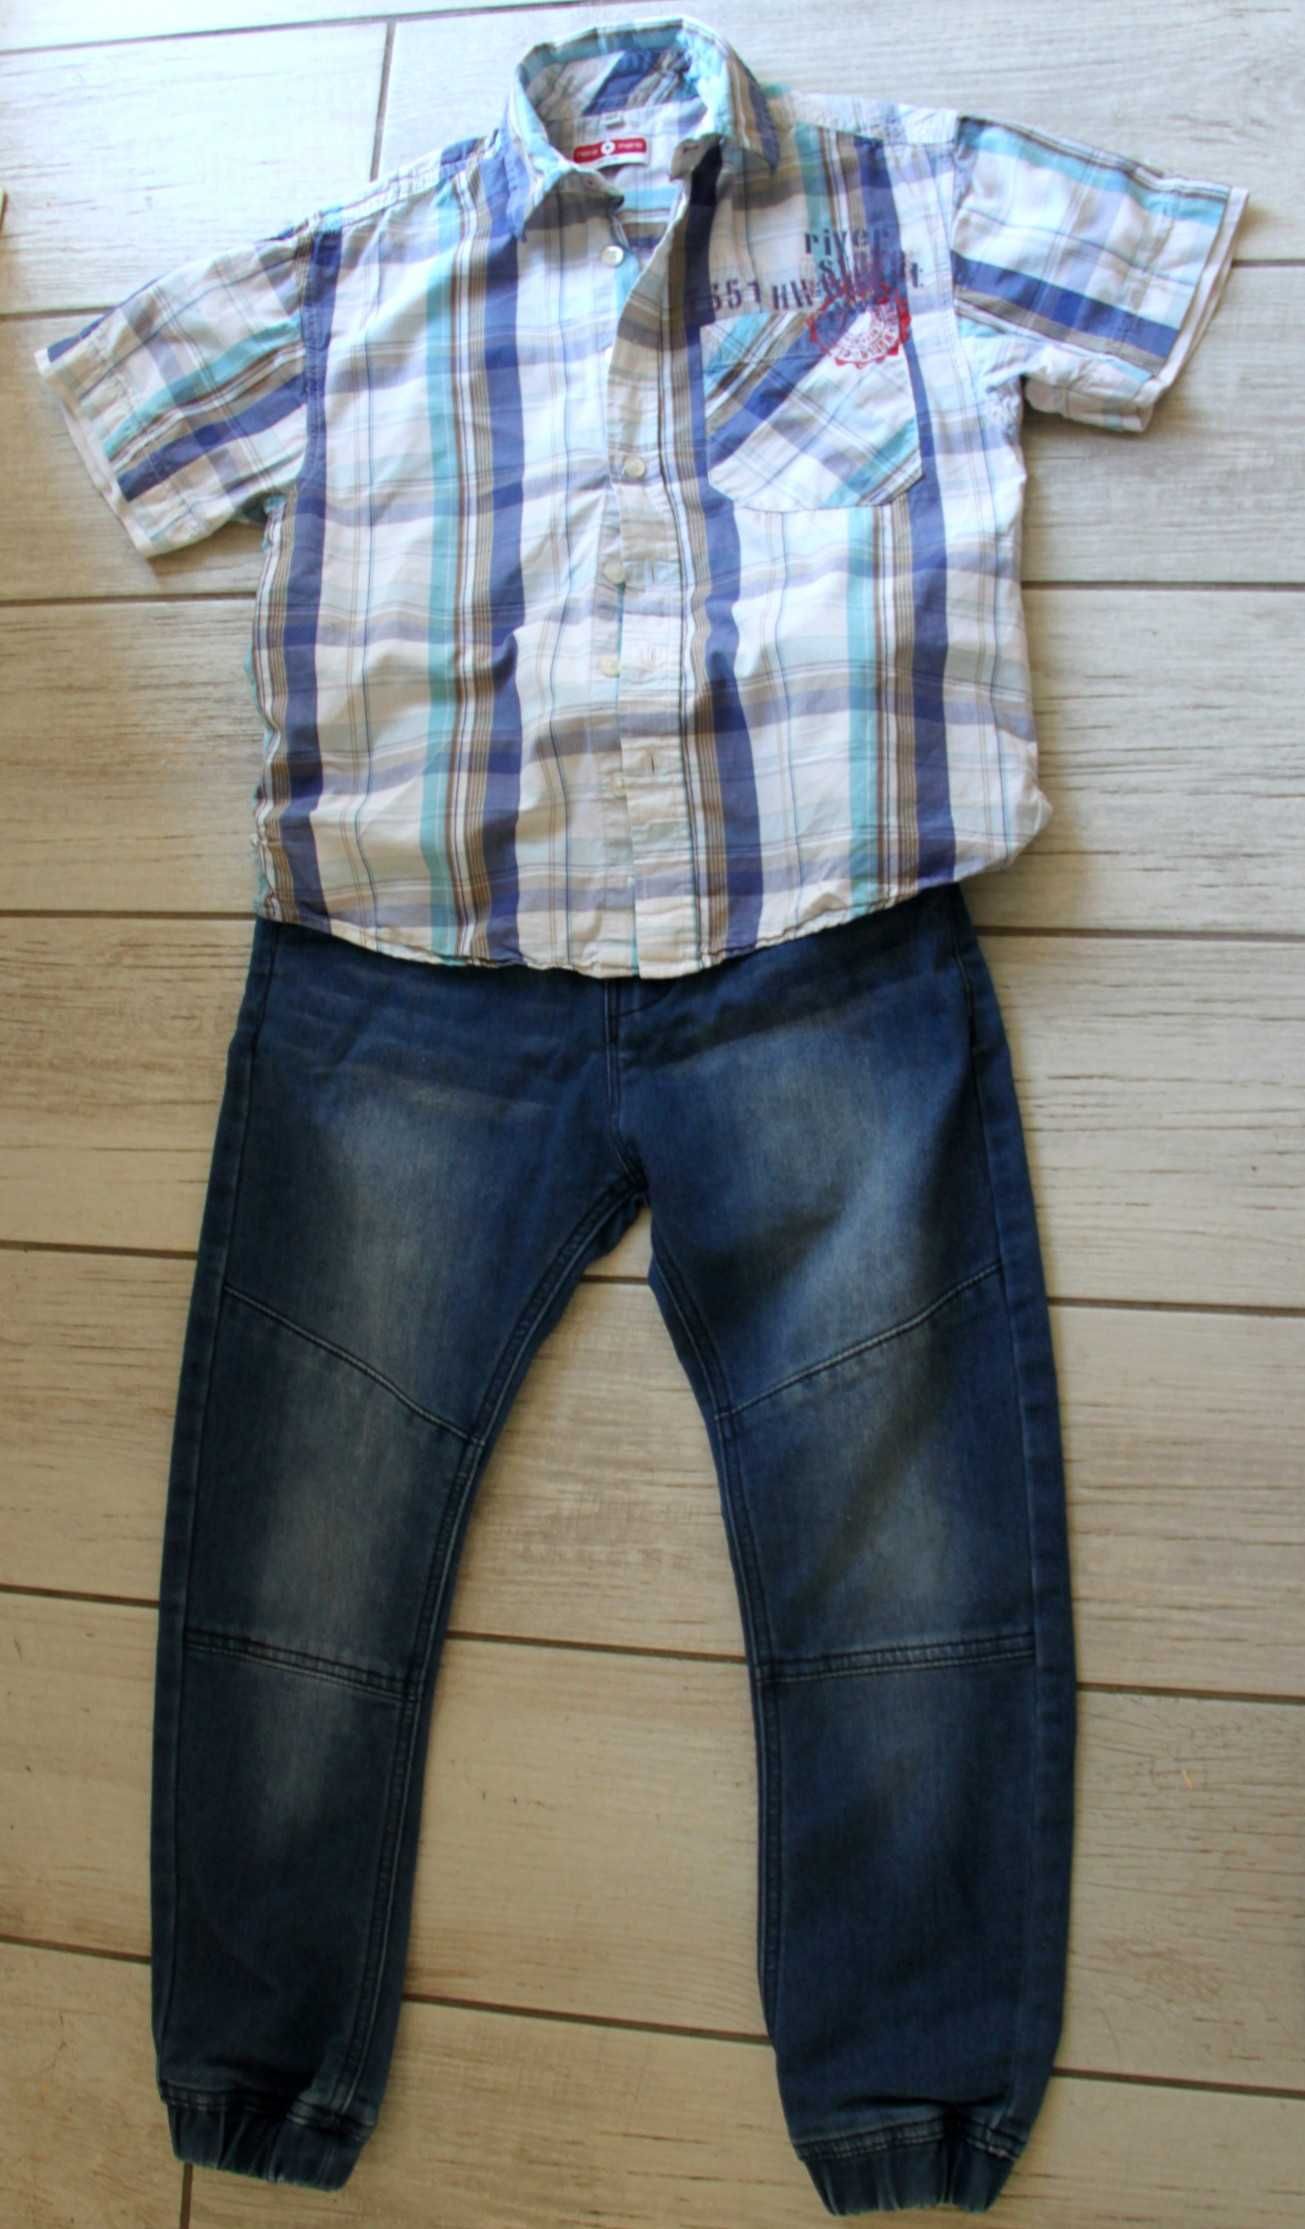 Zestaw ubrań dla chłopca jeansy dresy koszula 122 - 128cm.